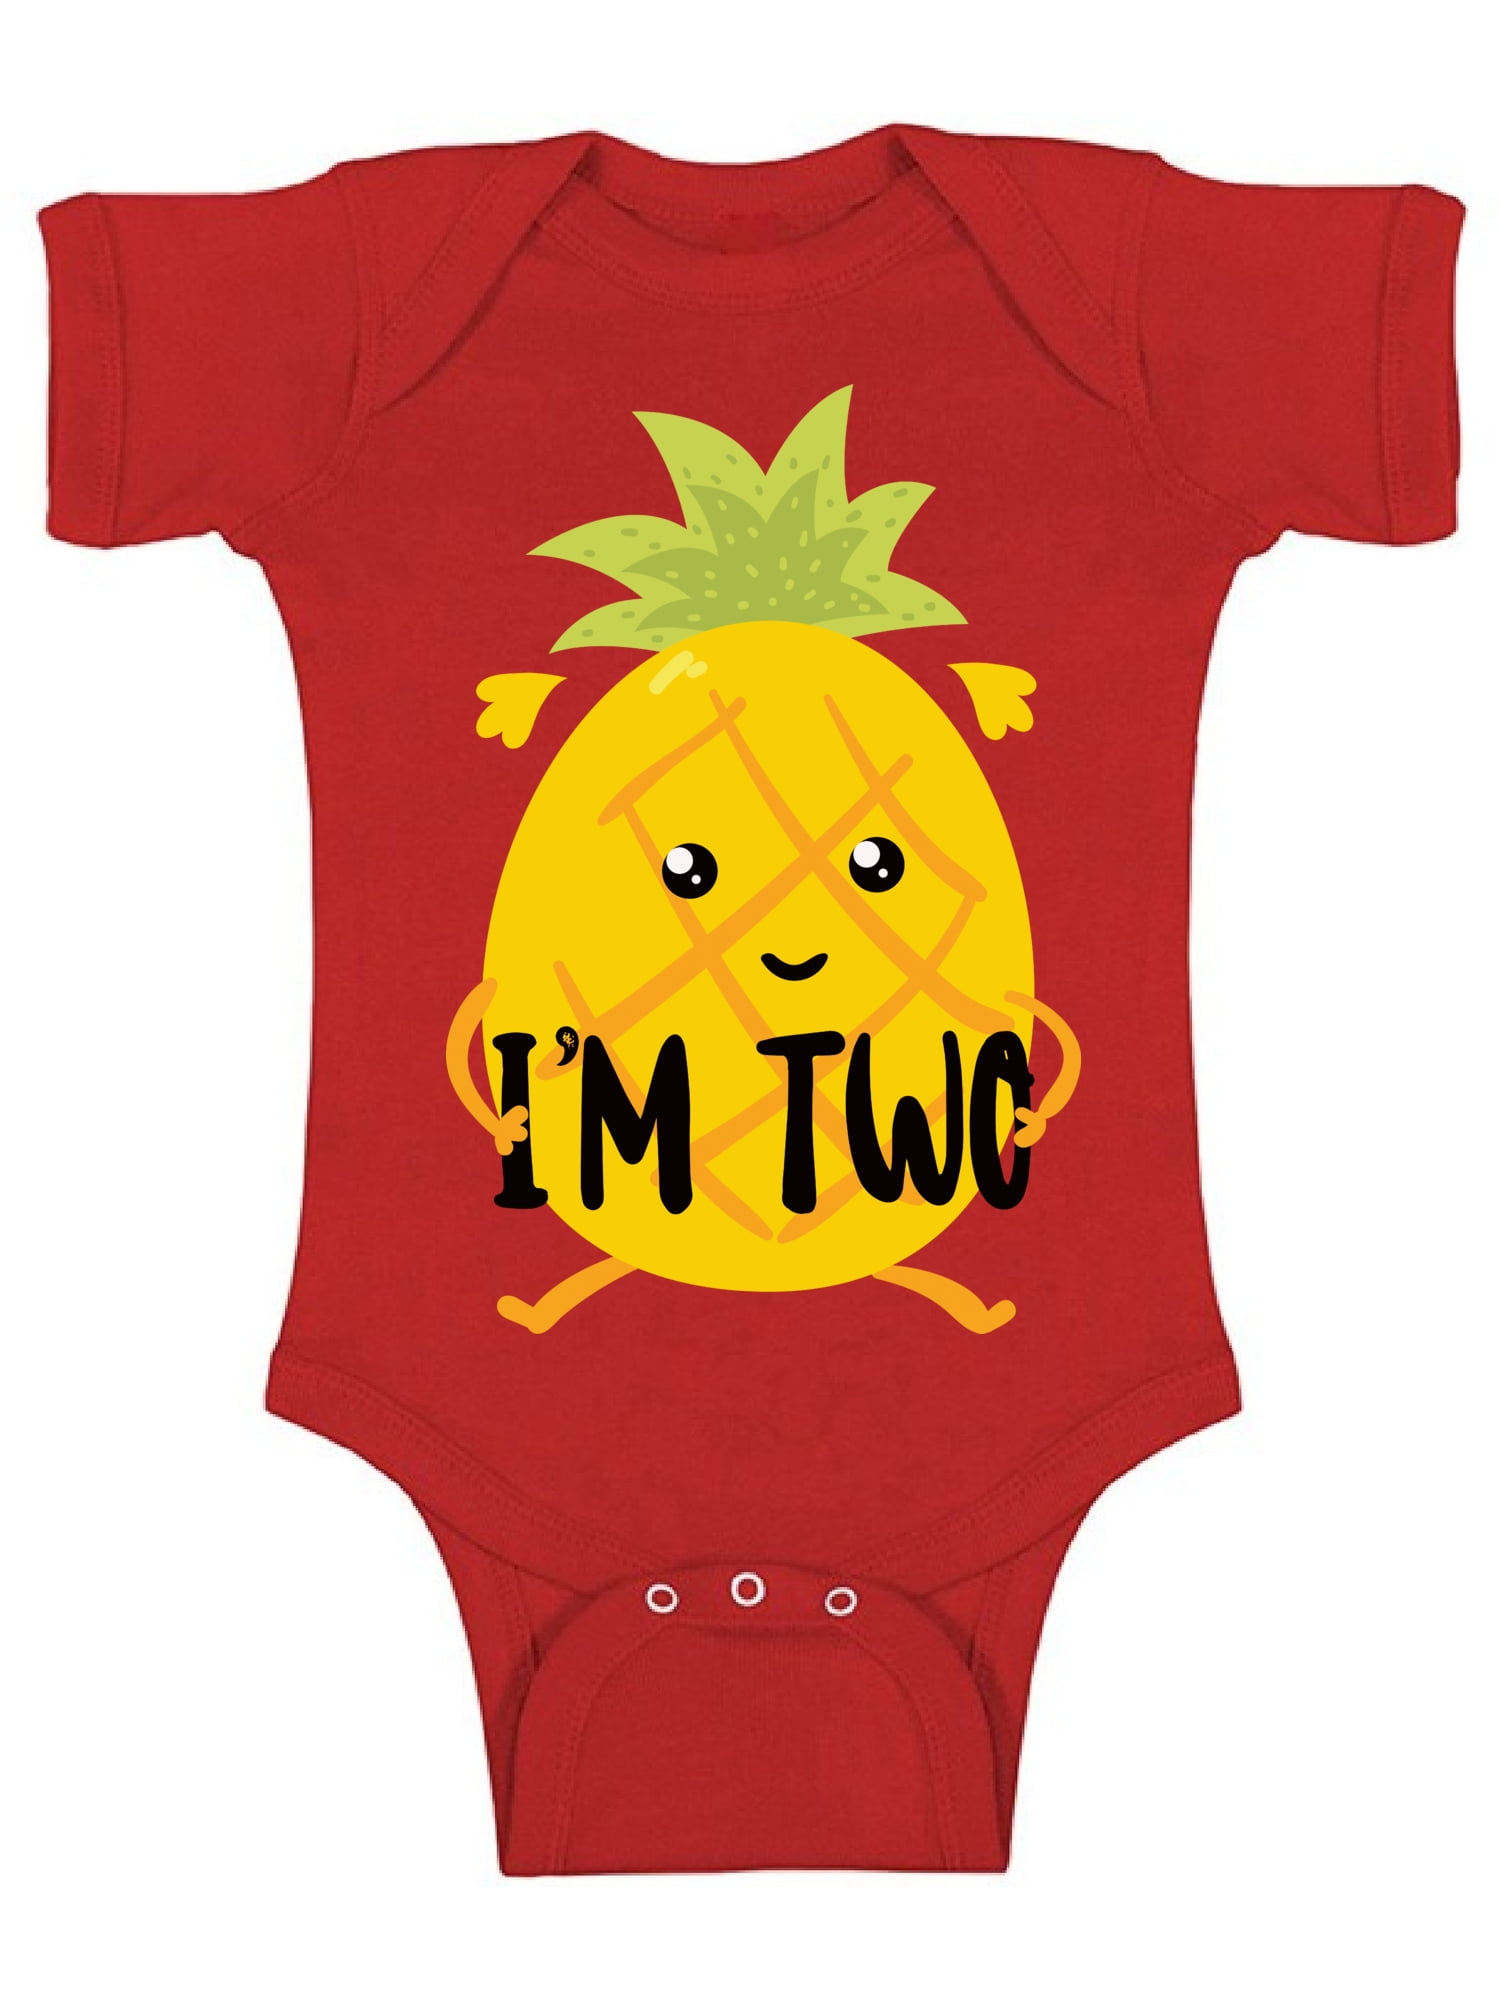 Classic Pineapple Infant Short Sleeve Babysuit Jumpsuit